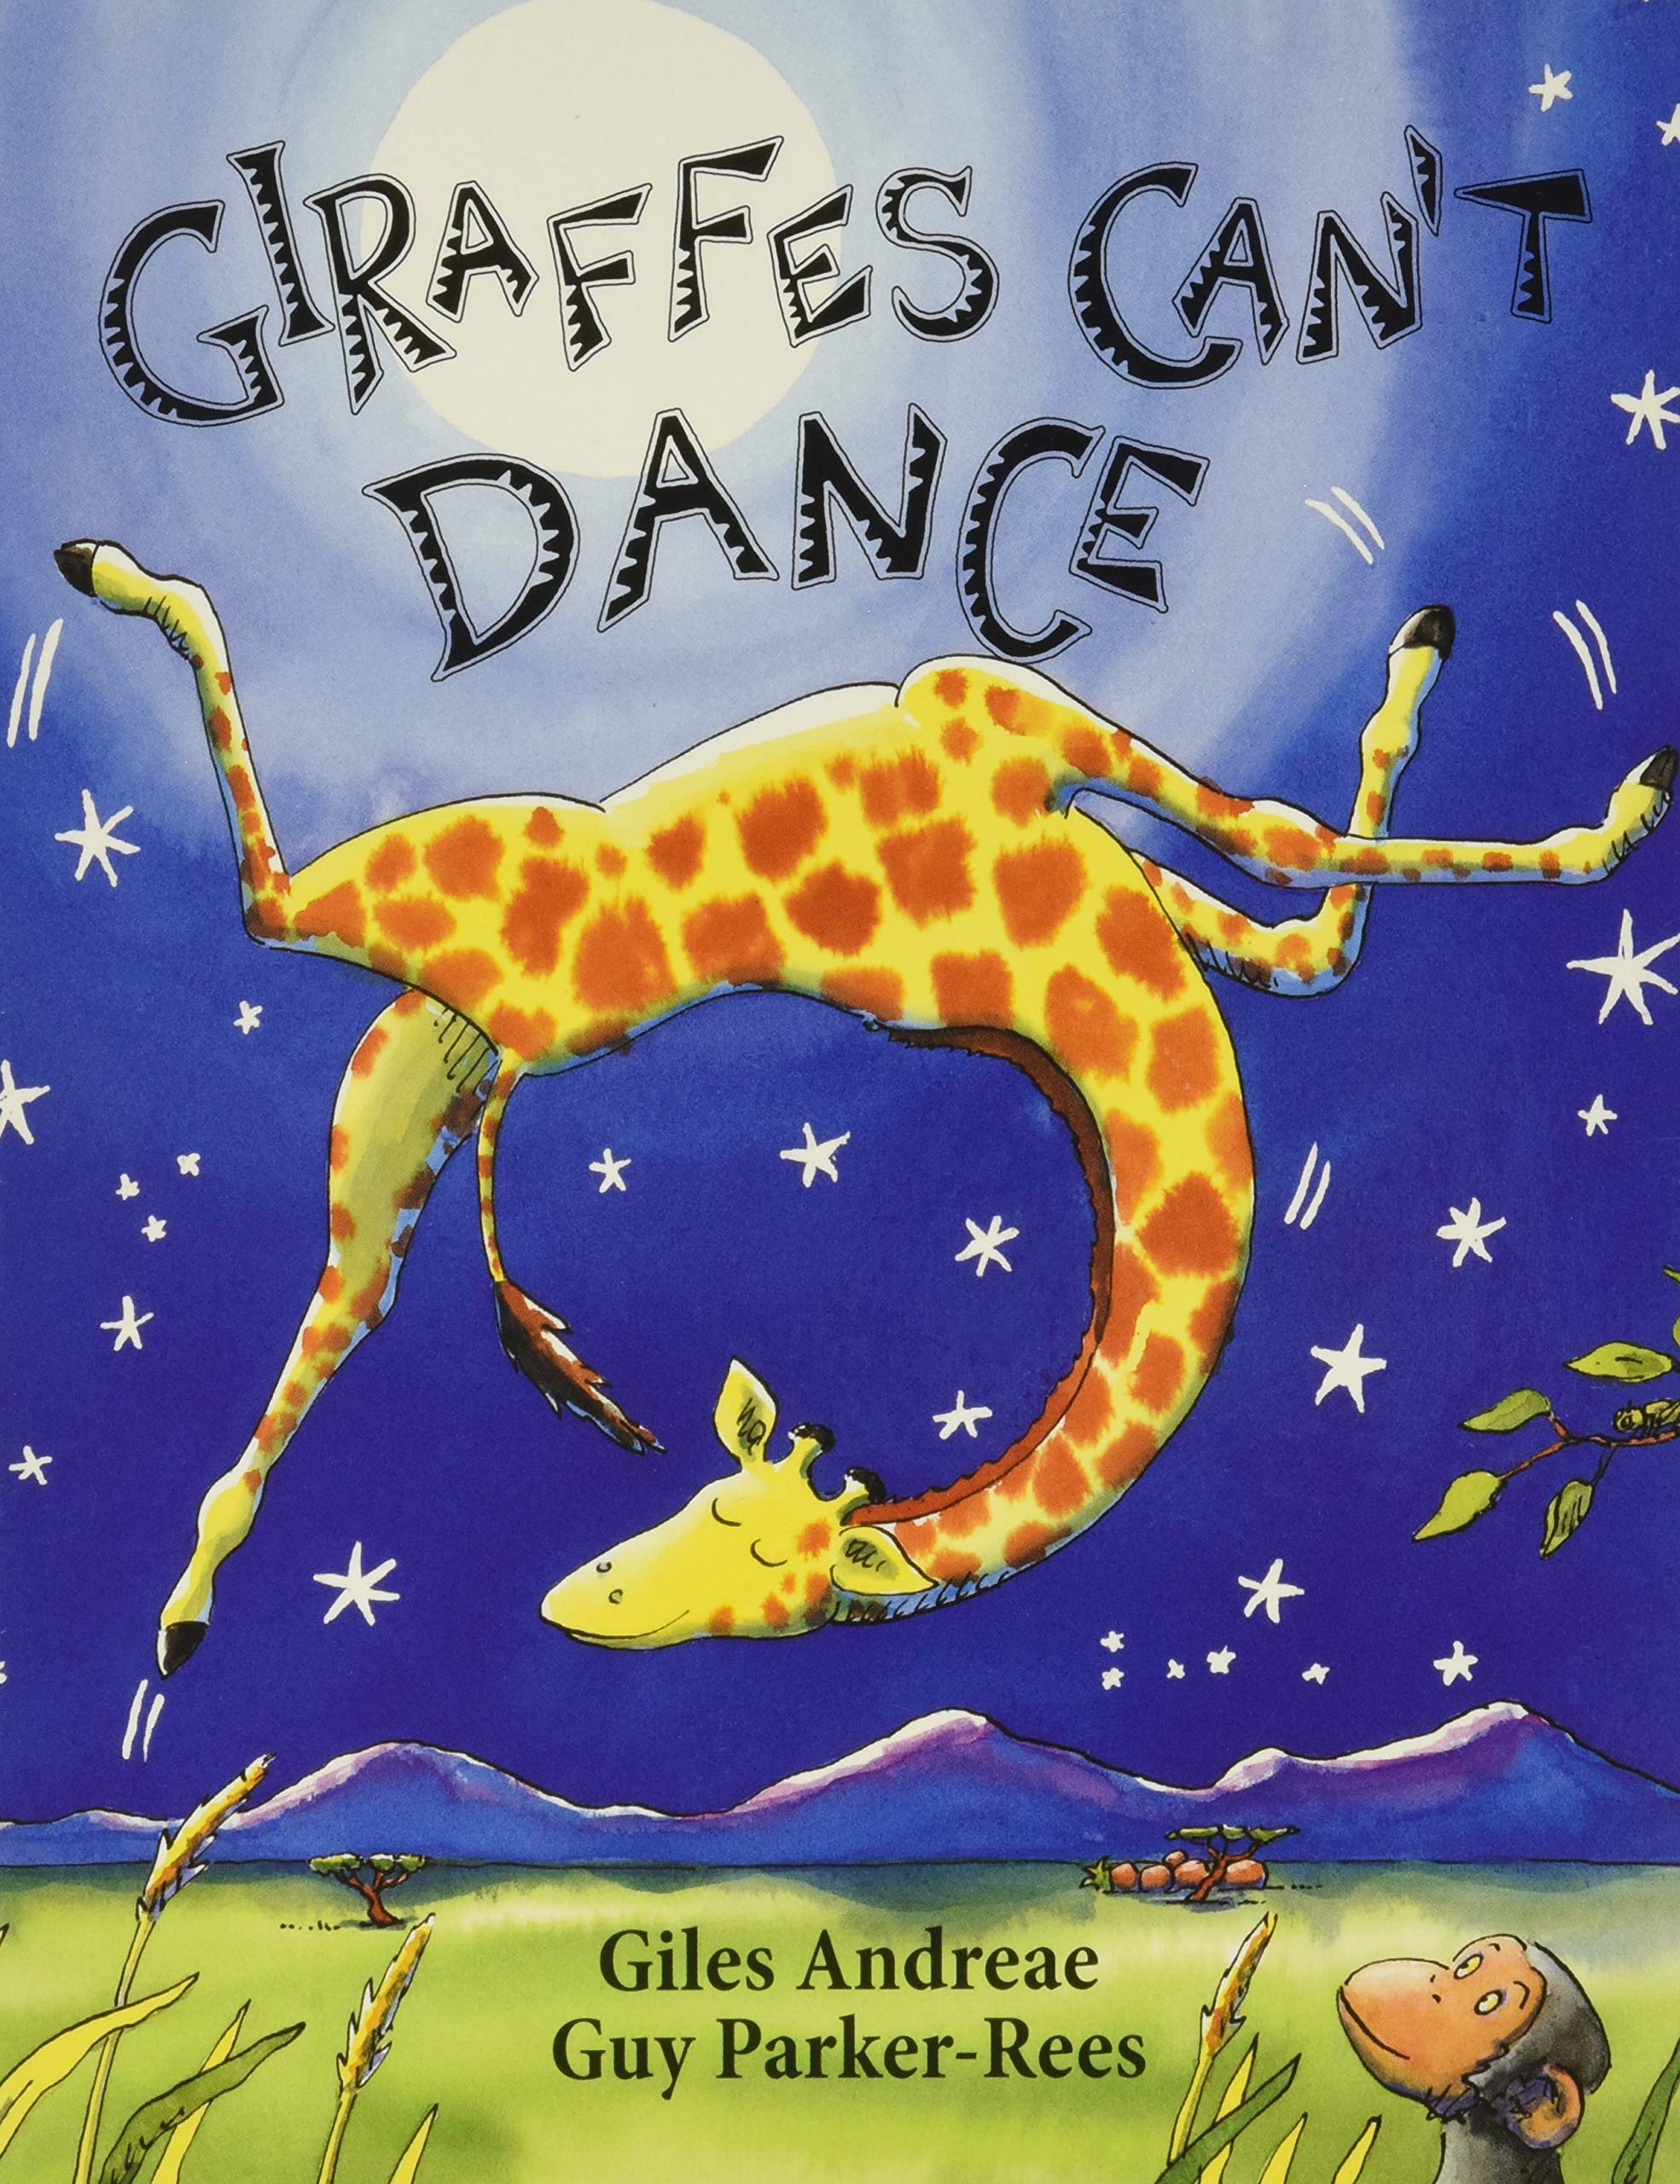 giraffes can't dance